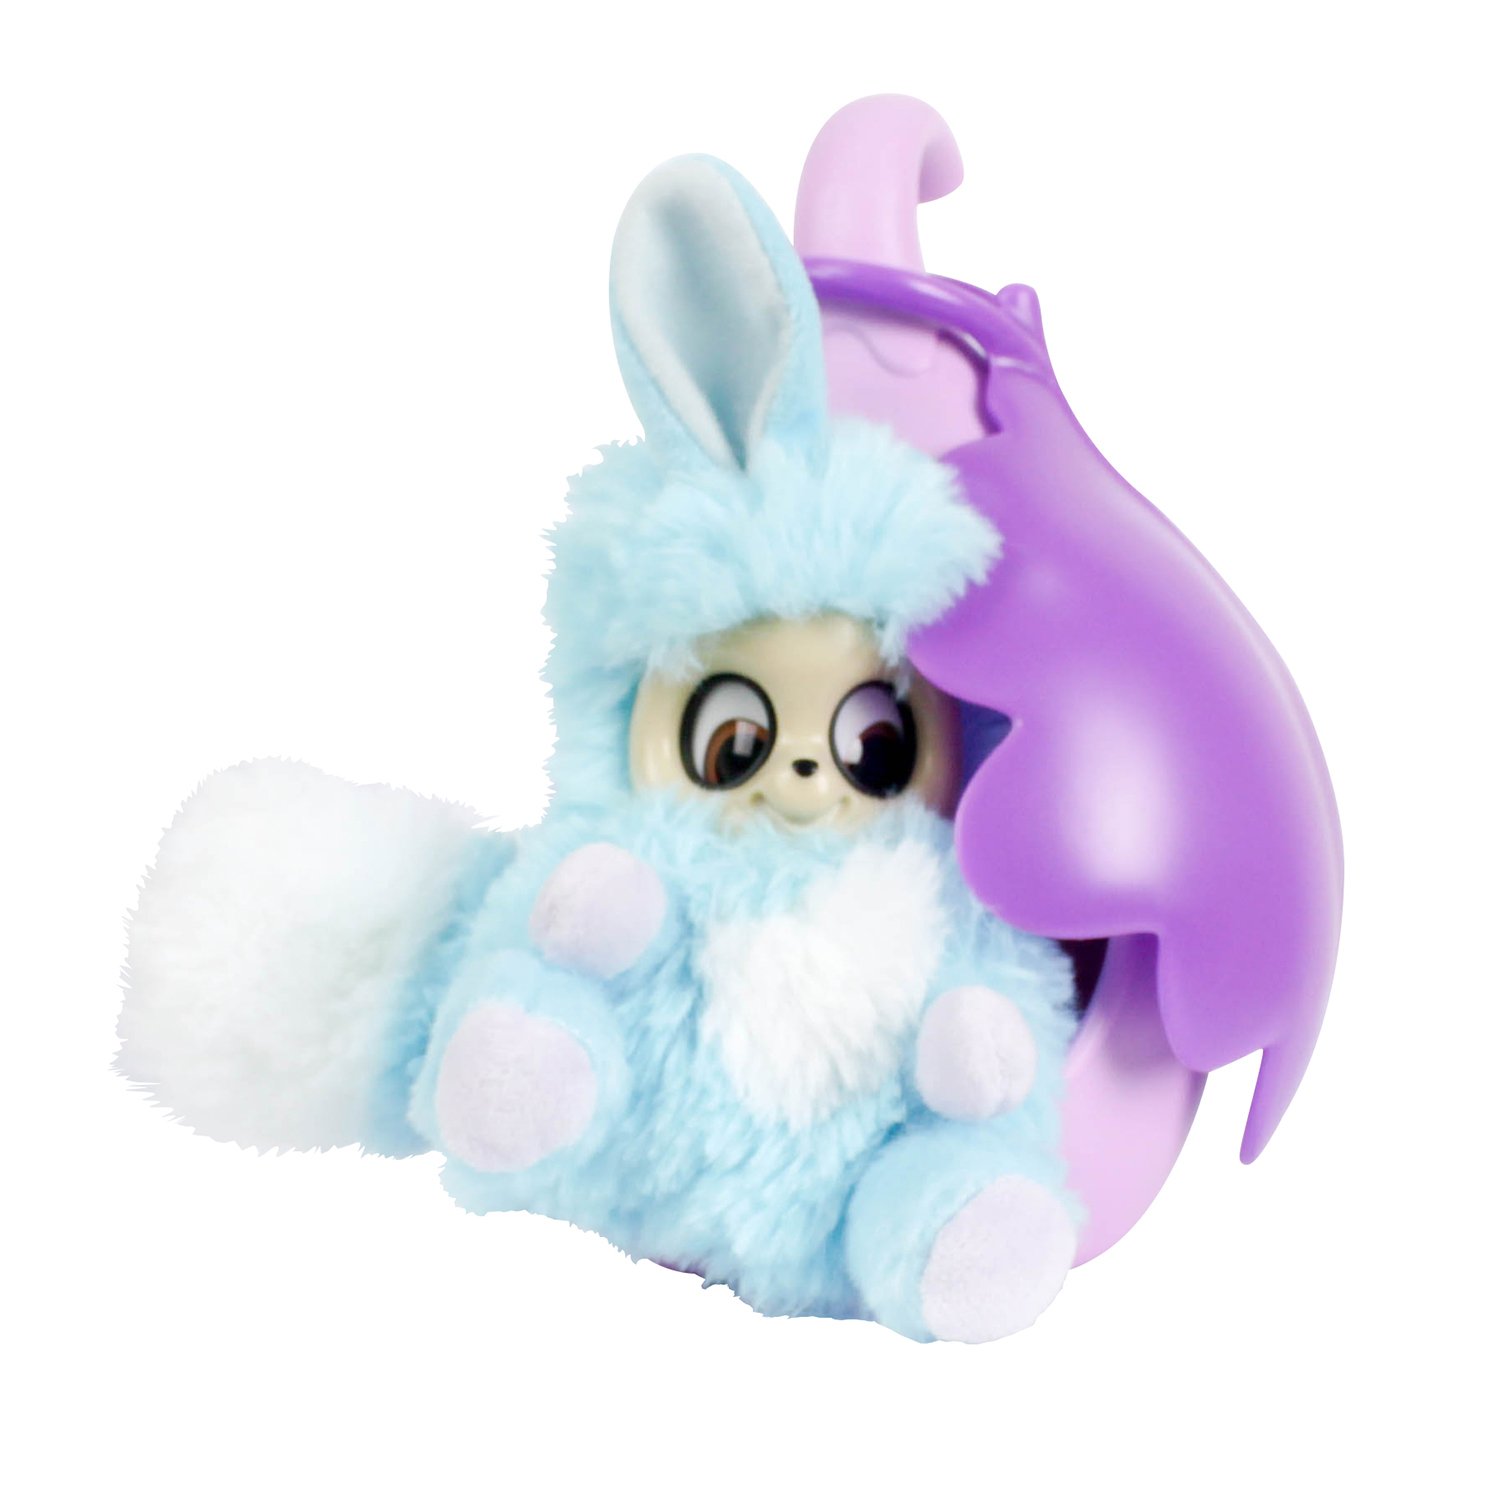 Мягкая игрушка Адеро из серии Bush baby world, 17 см., со спальным коконом  